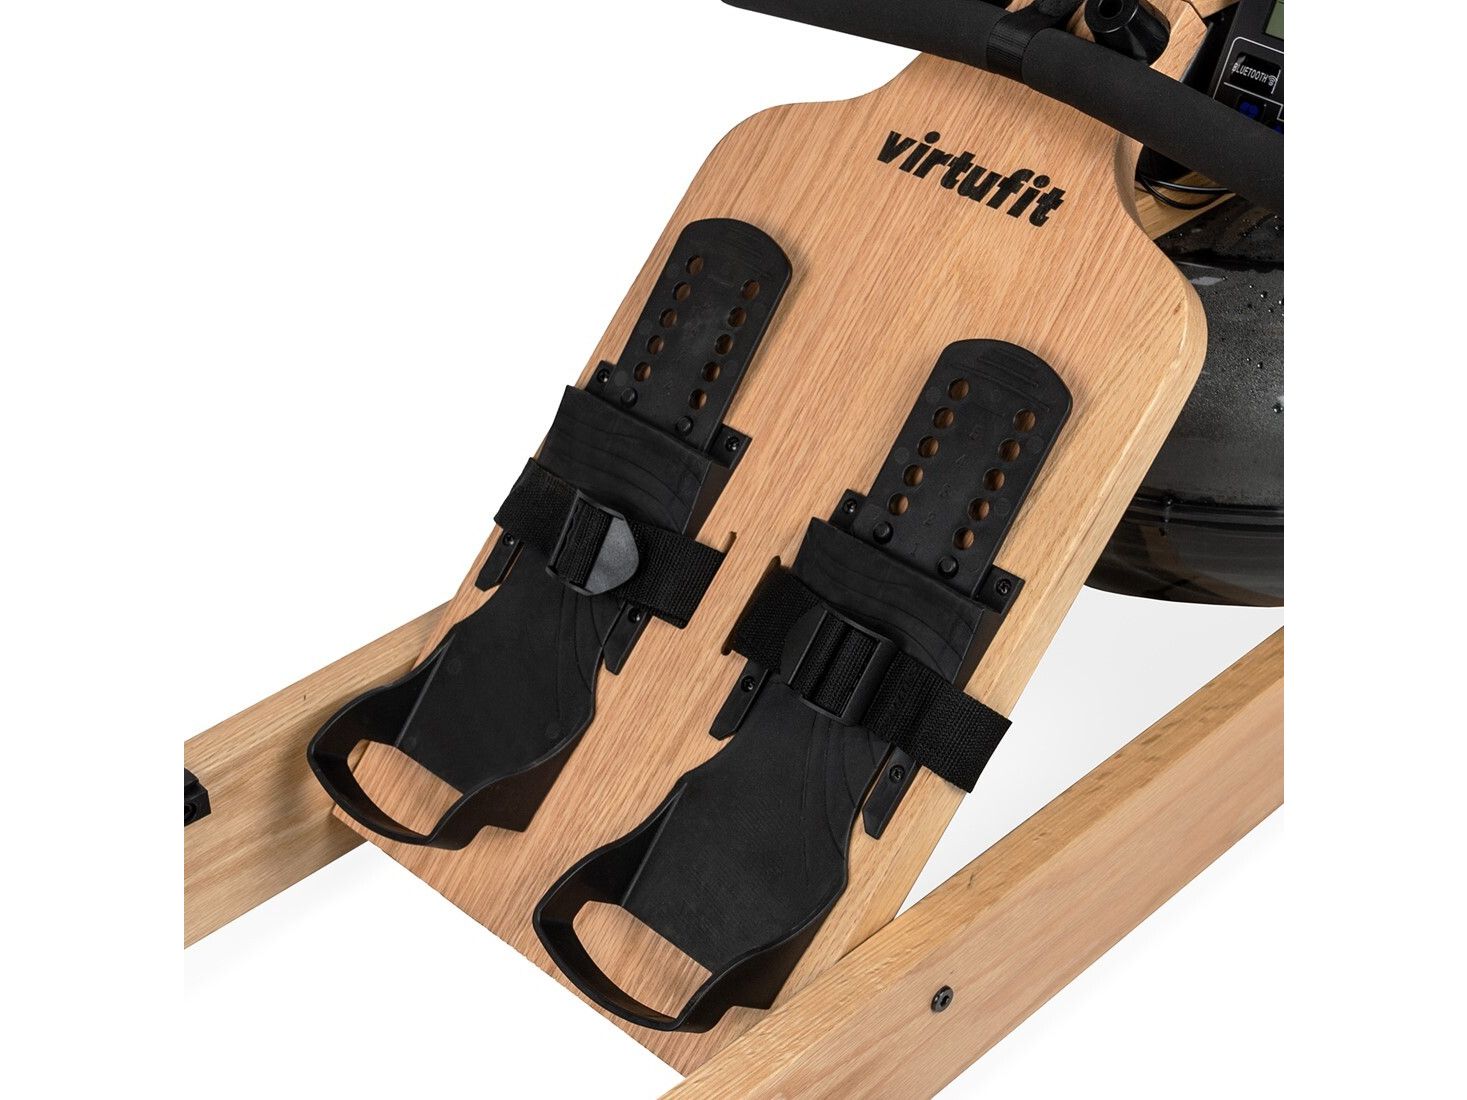 virtufit-wood-elite-water-resistance-rower